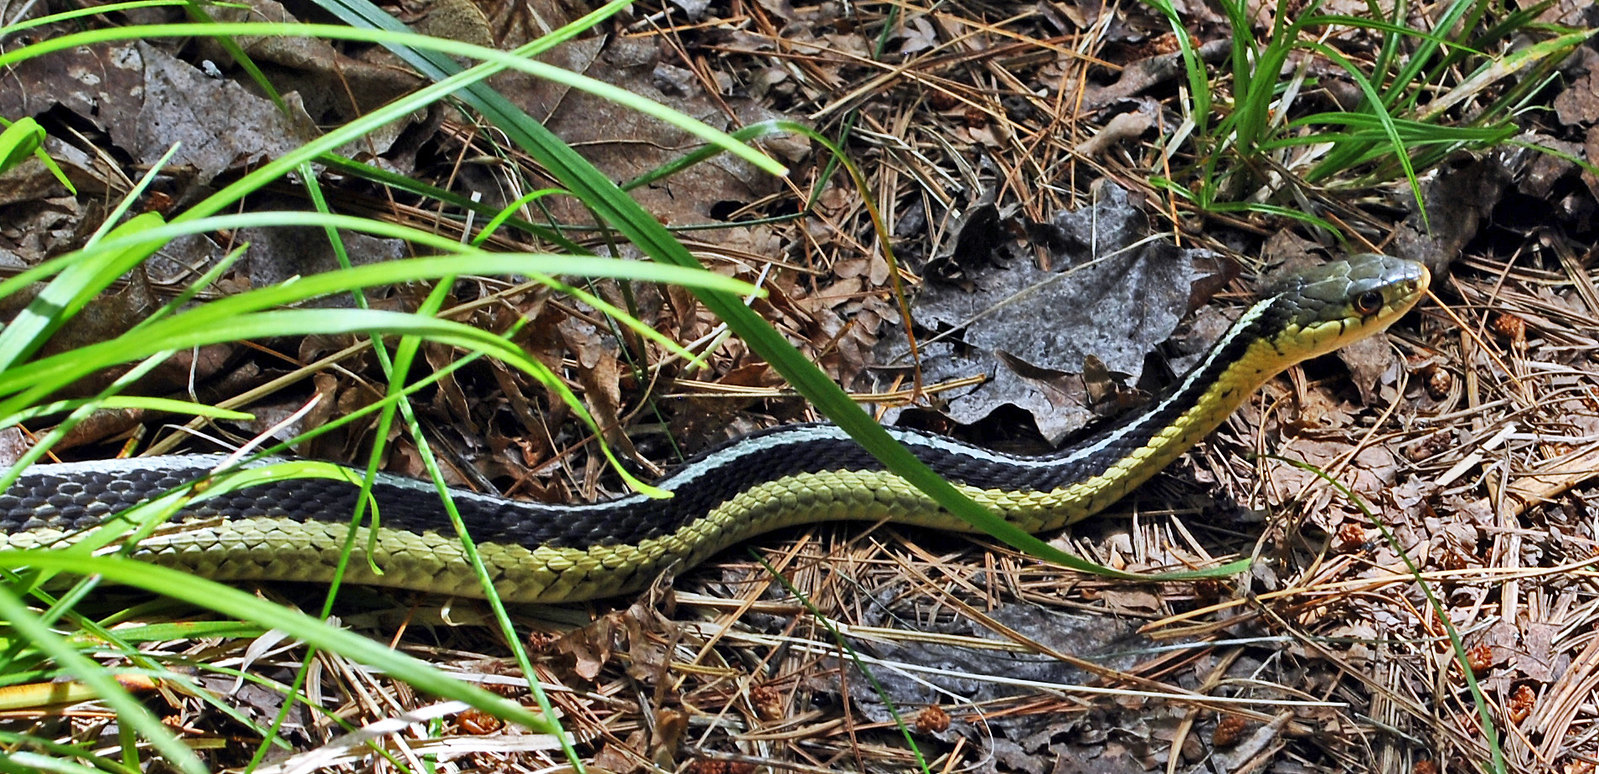 Garter Snake In The Garden Let It Be Lawnstarter